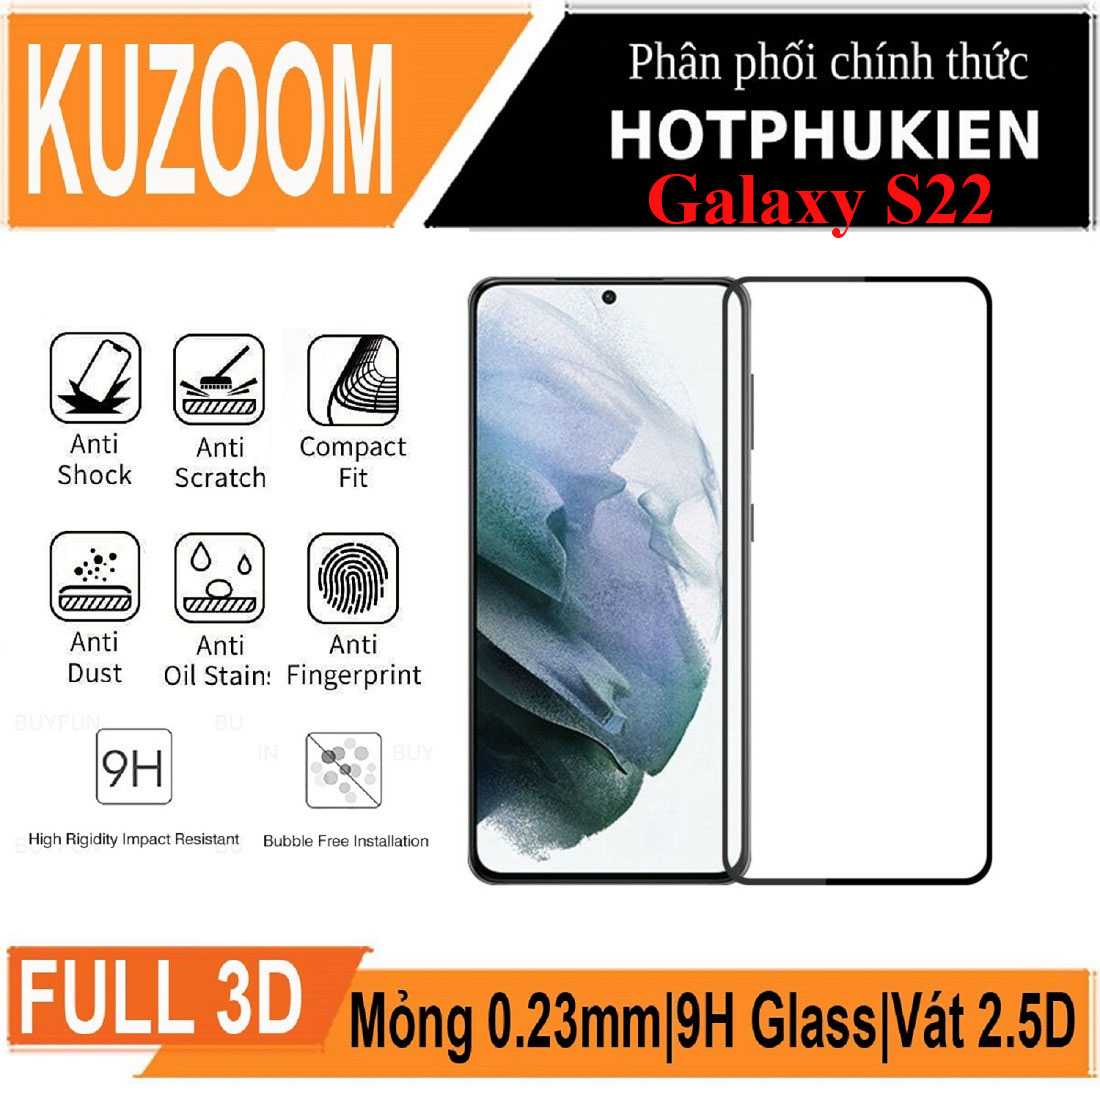 Miếng dán kính cường lực 3D cho Samsung Galaxy S22 hiệu Kuzoom Protective Glass - mỏng 0.3mm, vát cạnh 2.5D, độ cứng 9H, viền cứng mỏng